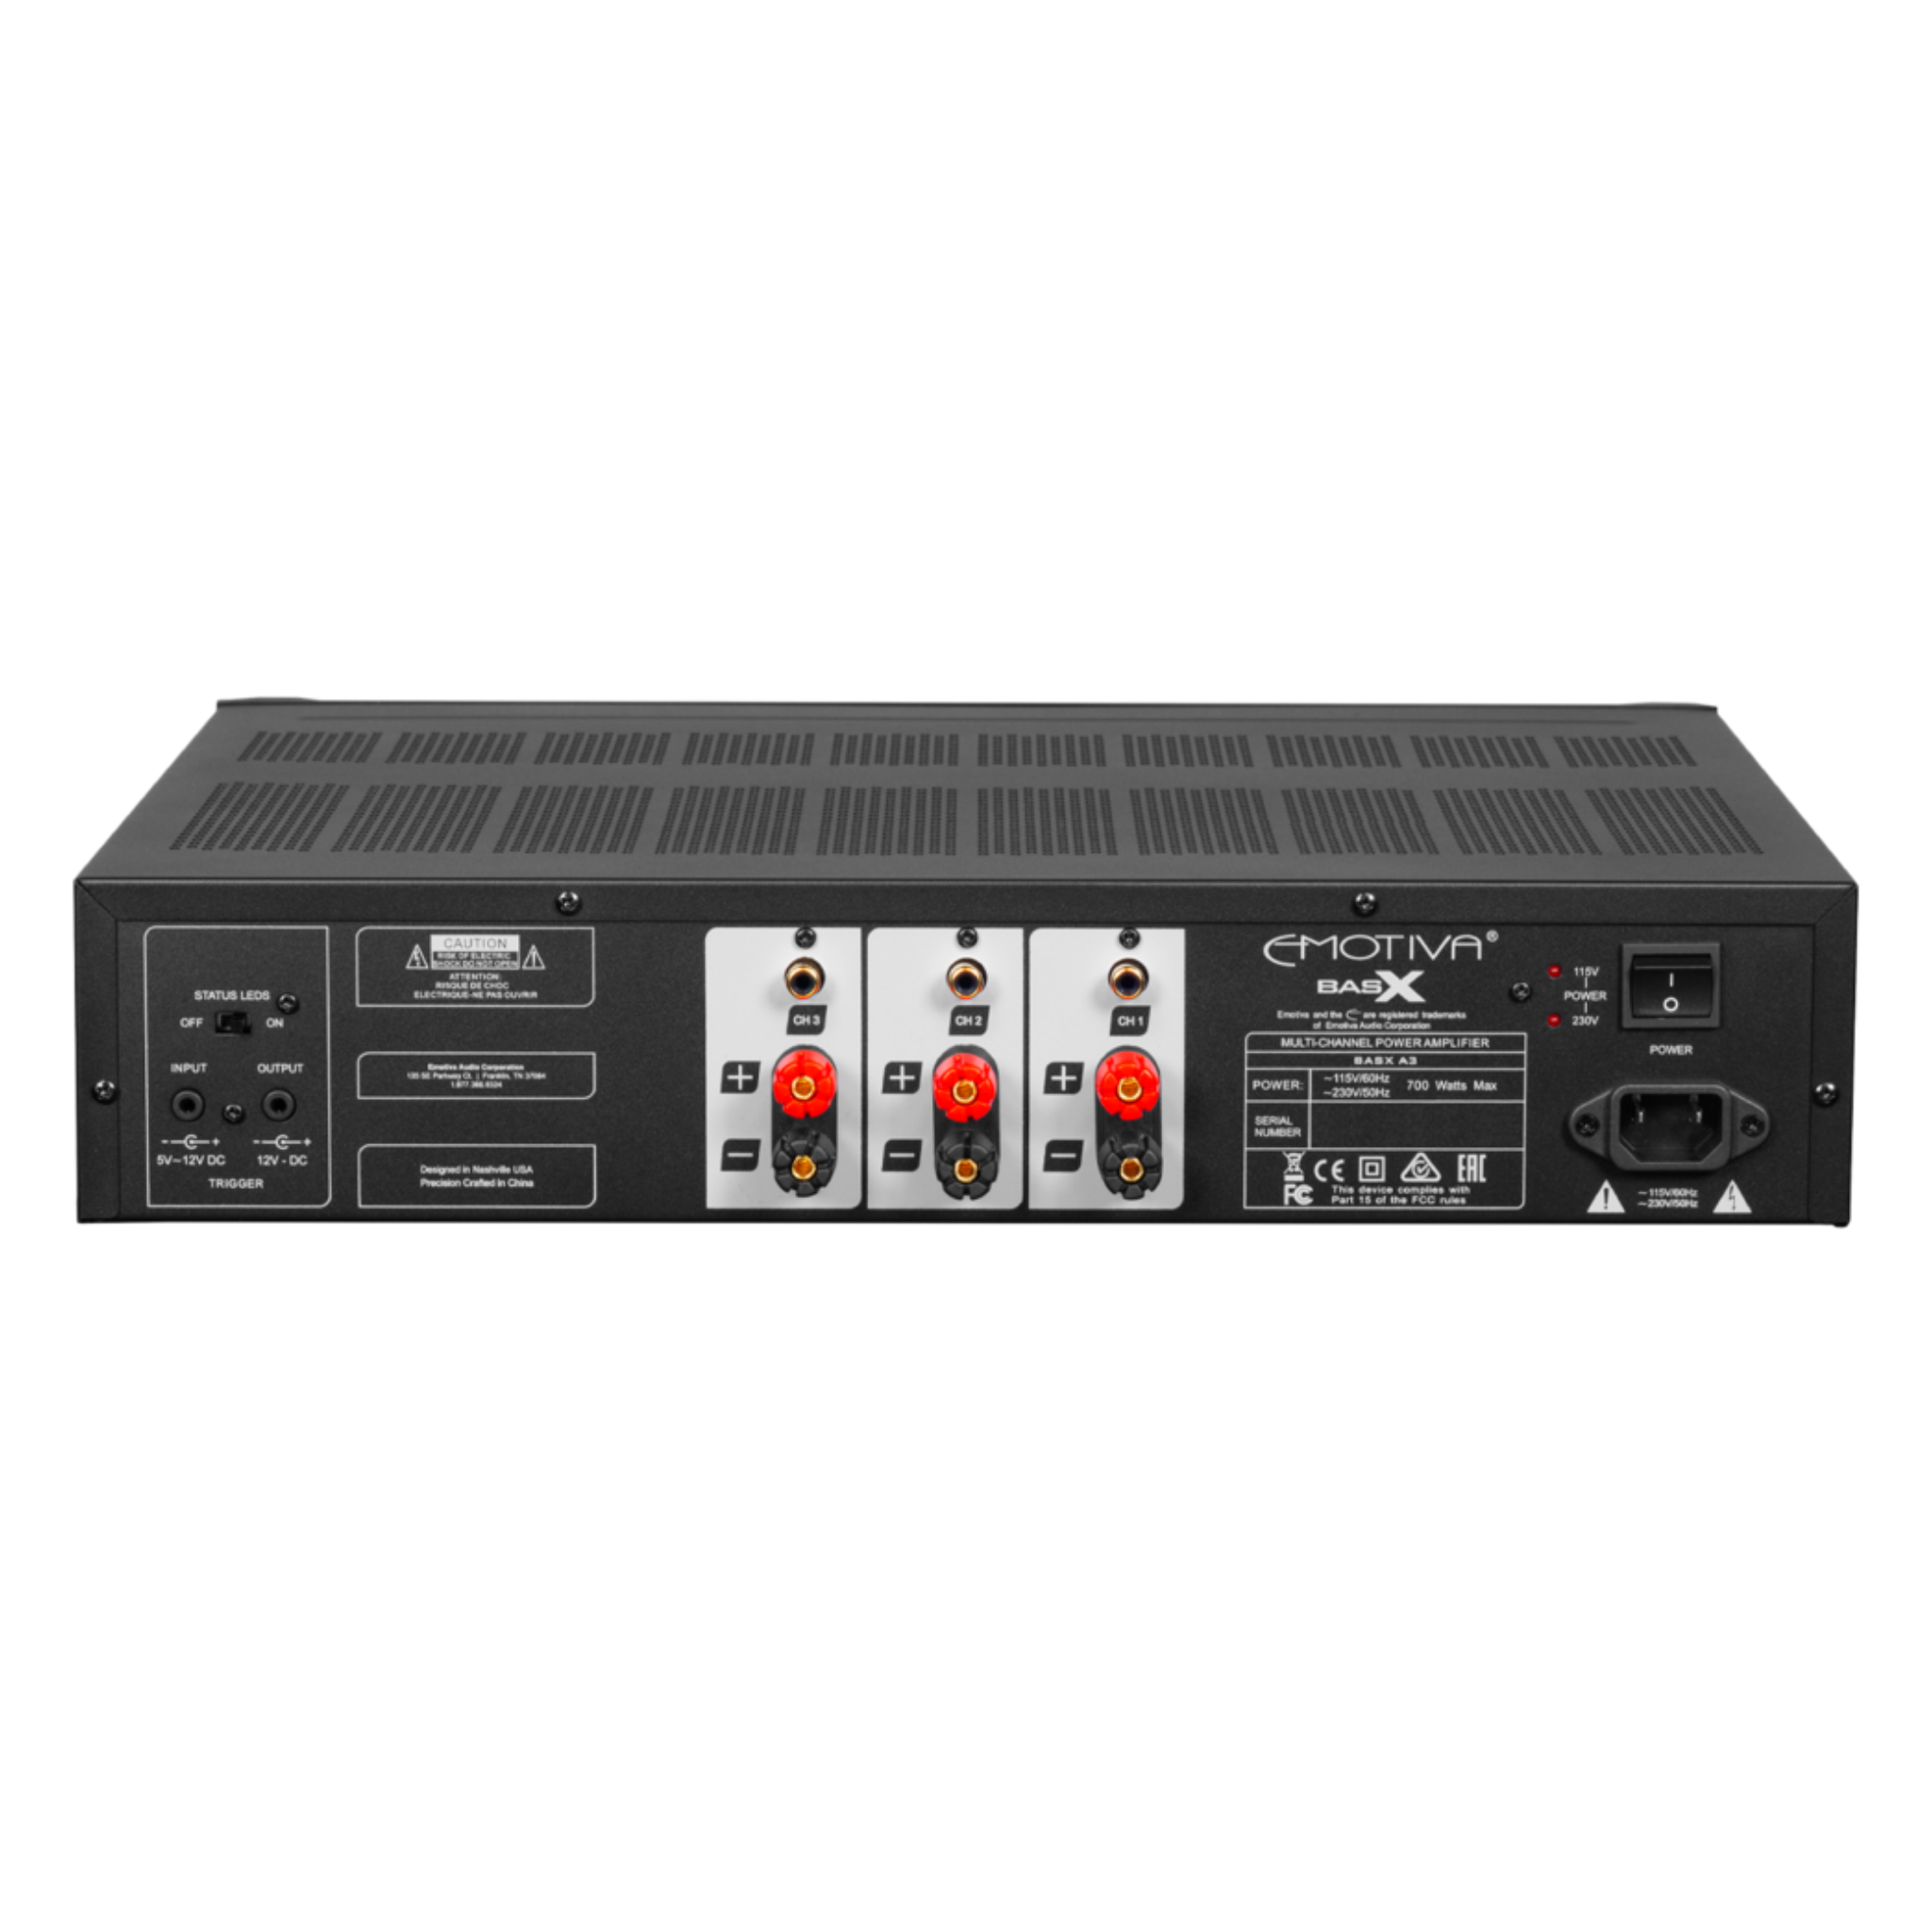 Emotiva BasX A3 - 3 Channel Power Amplifier - AVStore